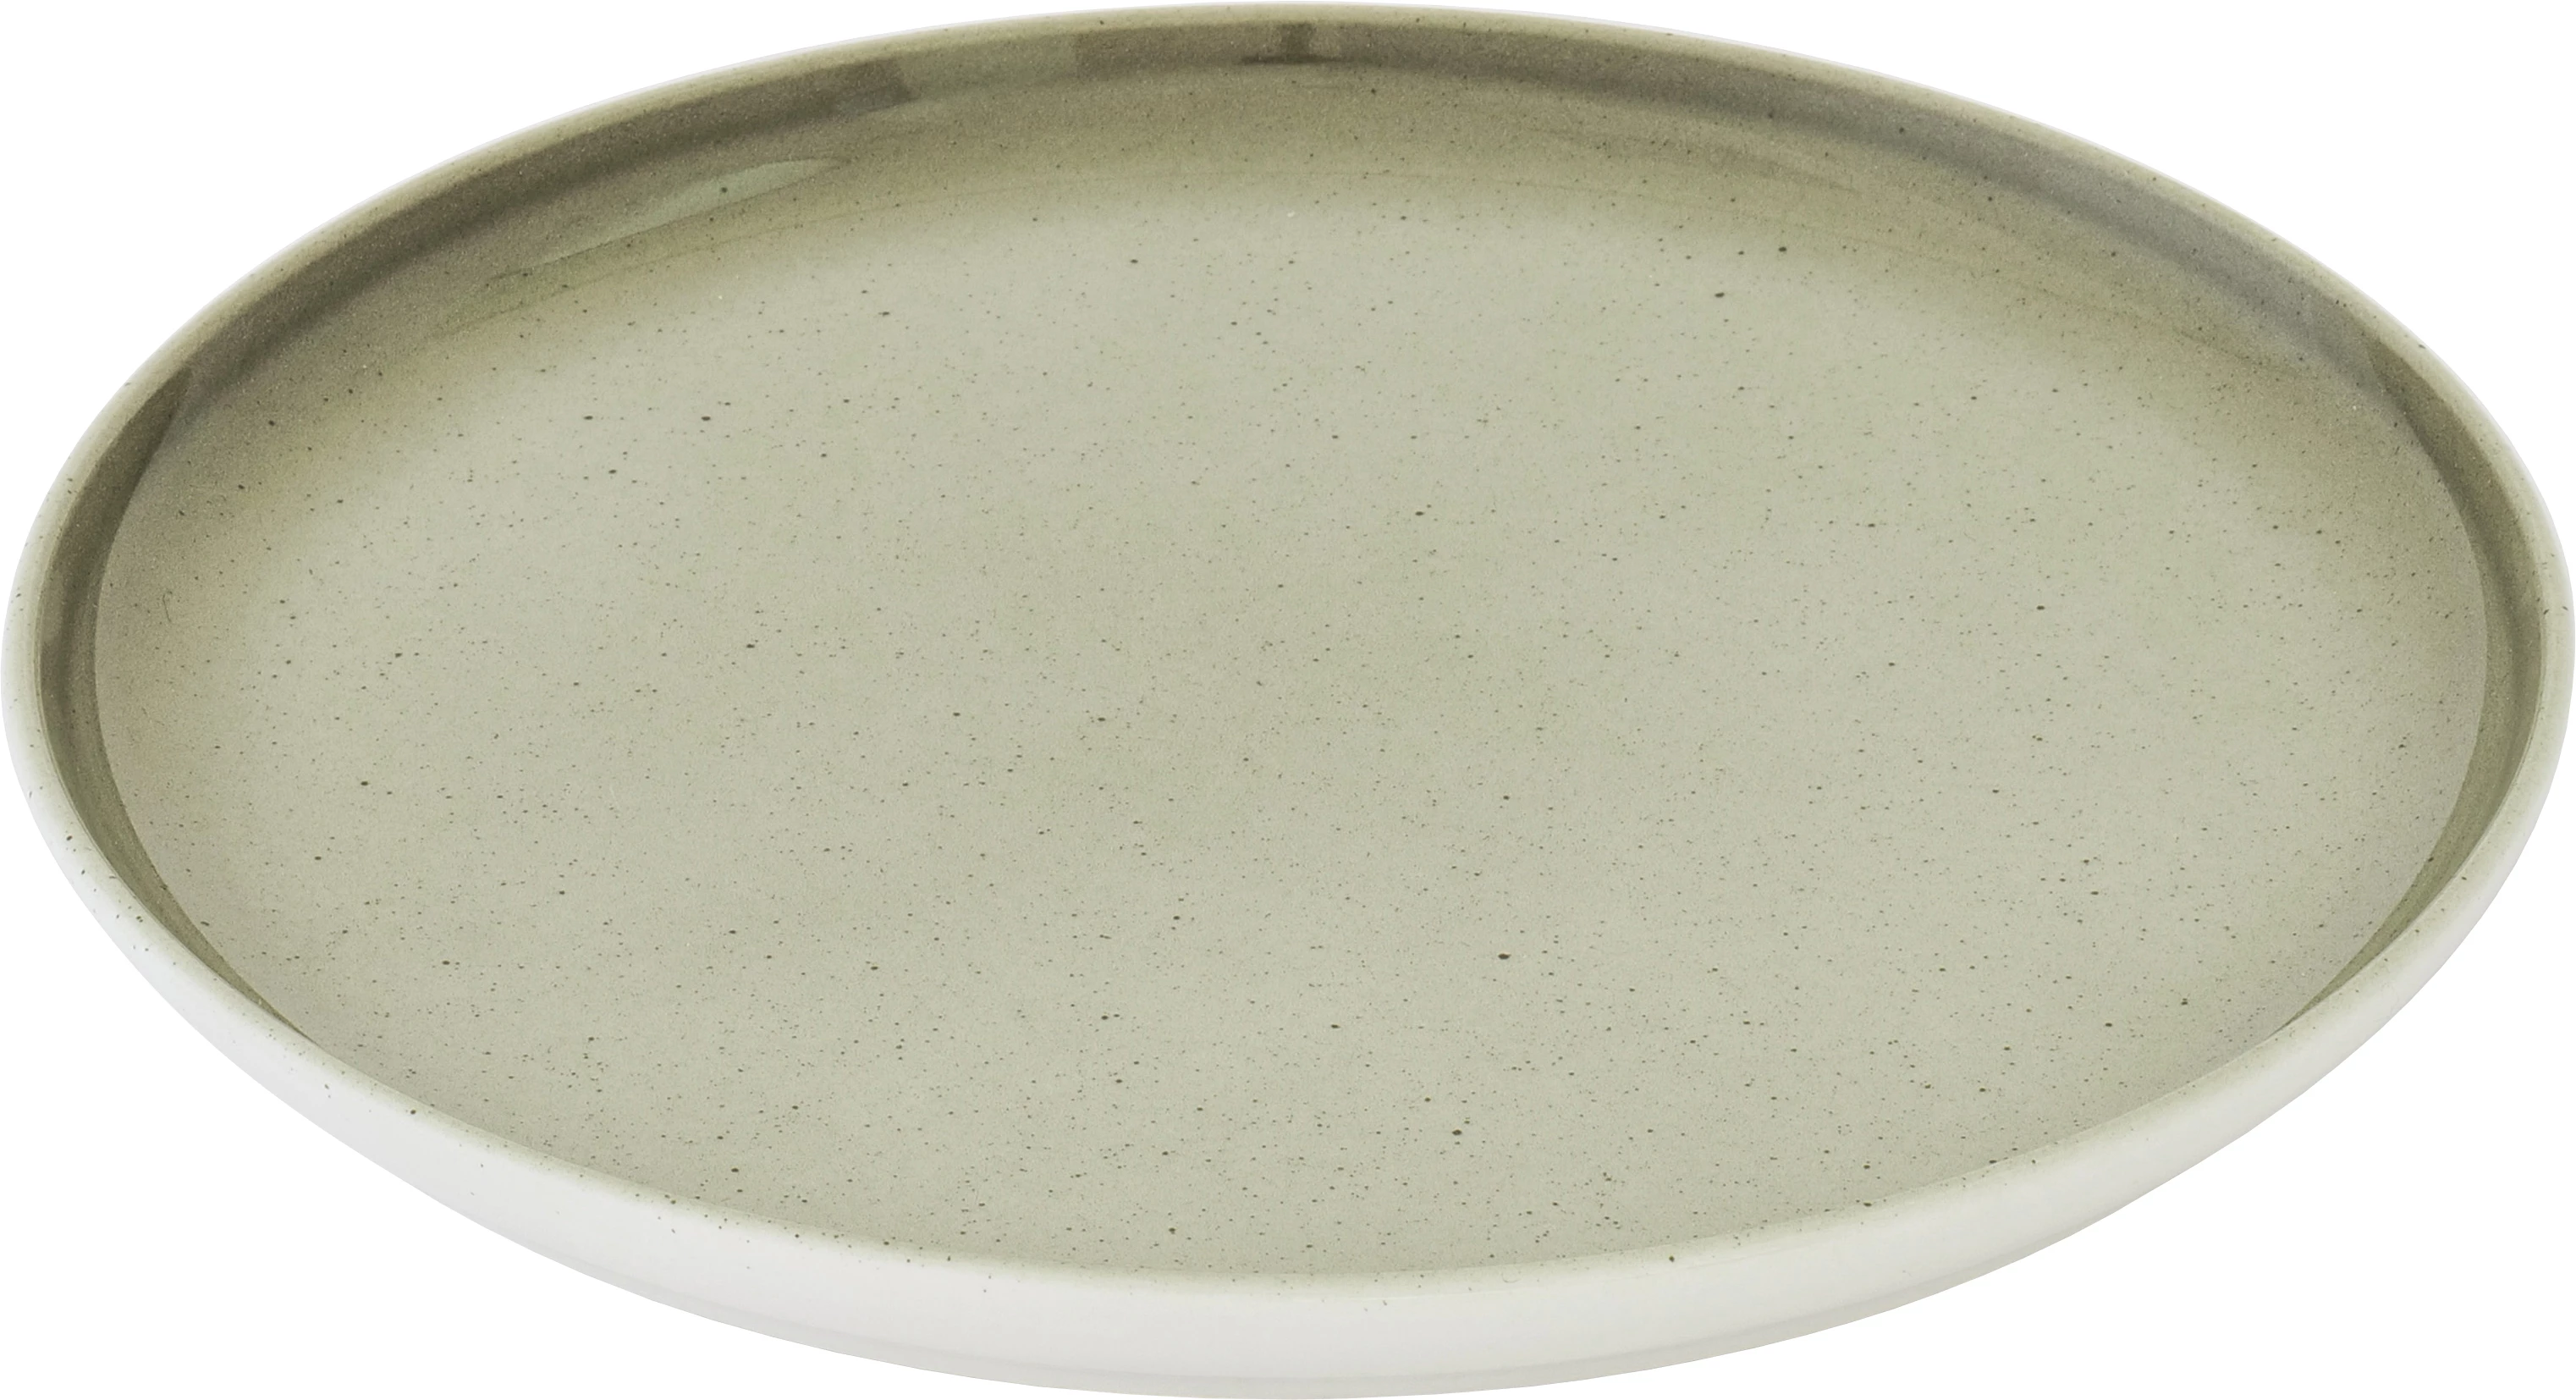 Figgjo Ela tallerken, uden fane, grøn, ø23 cm